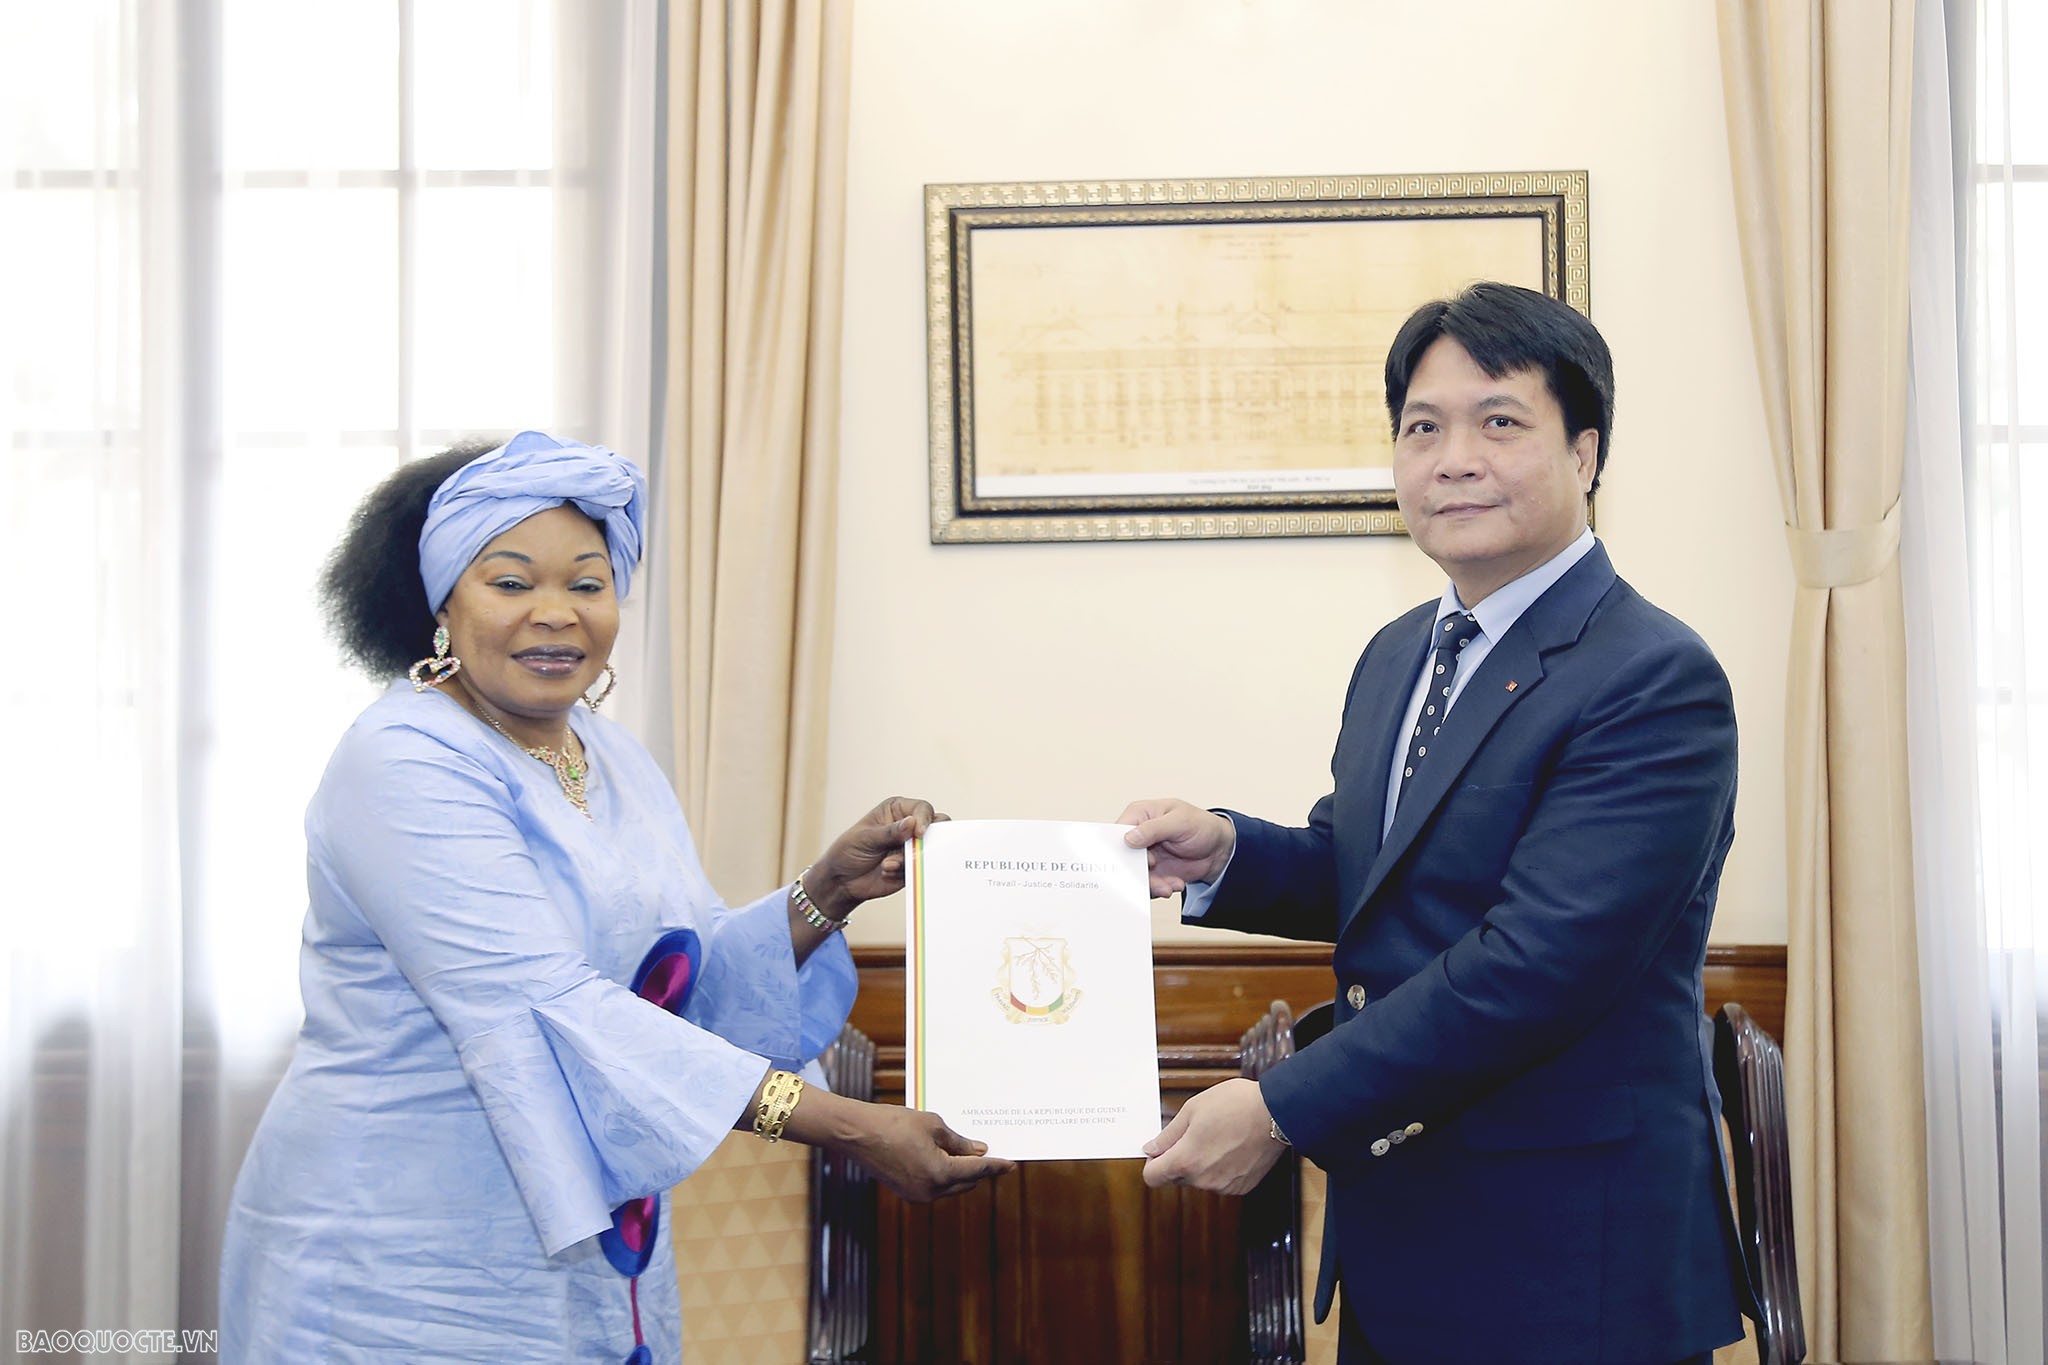 Tiếp nhận bản sao Thư ủy nhiệm bổ nhiệm Đại sứ Guinea và Estonia tại Việt Nam